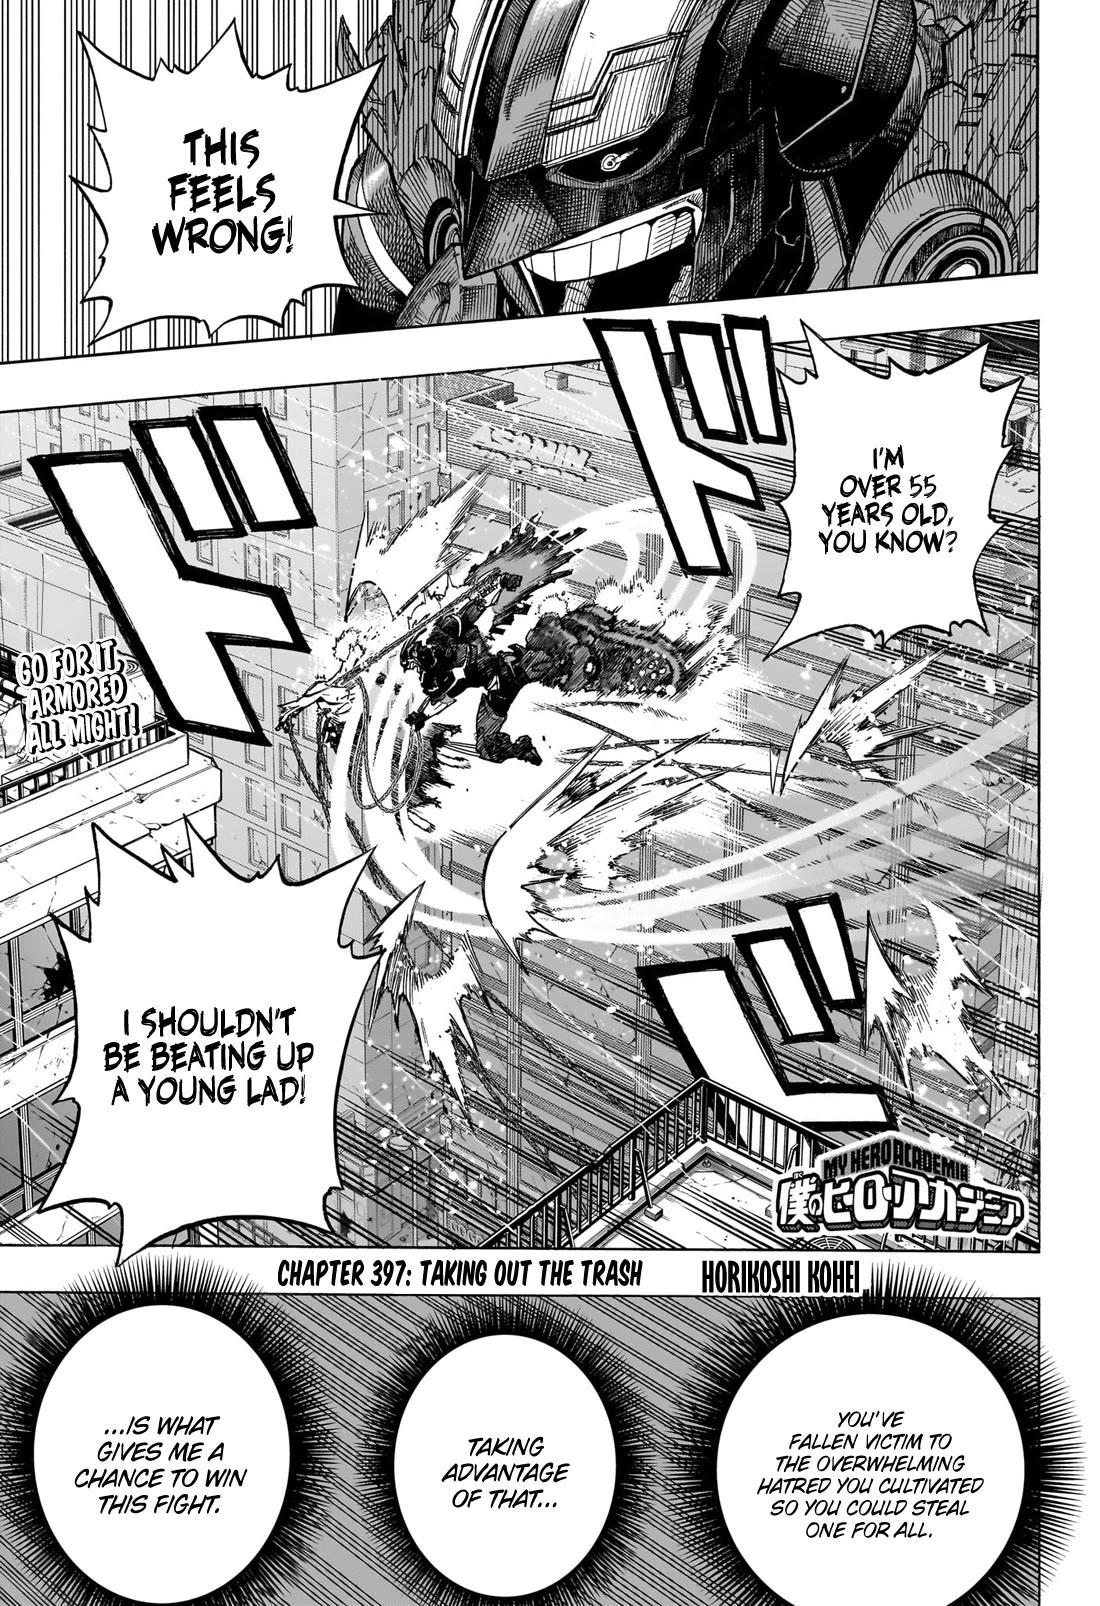 Boku no Hero Academia Ch.408 Page 1 - Mangago